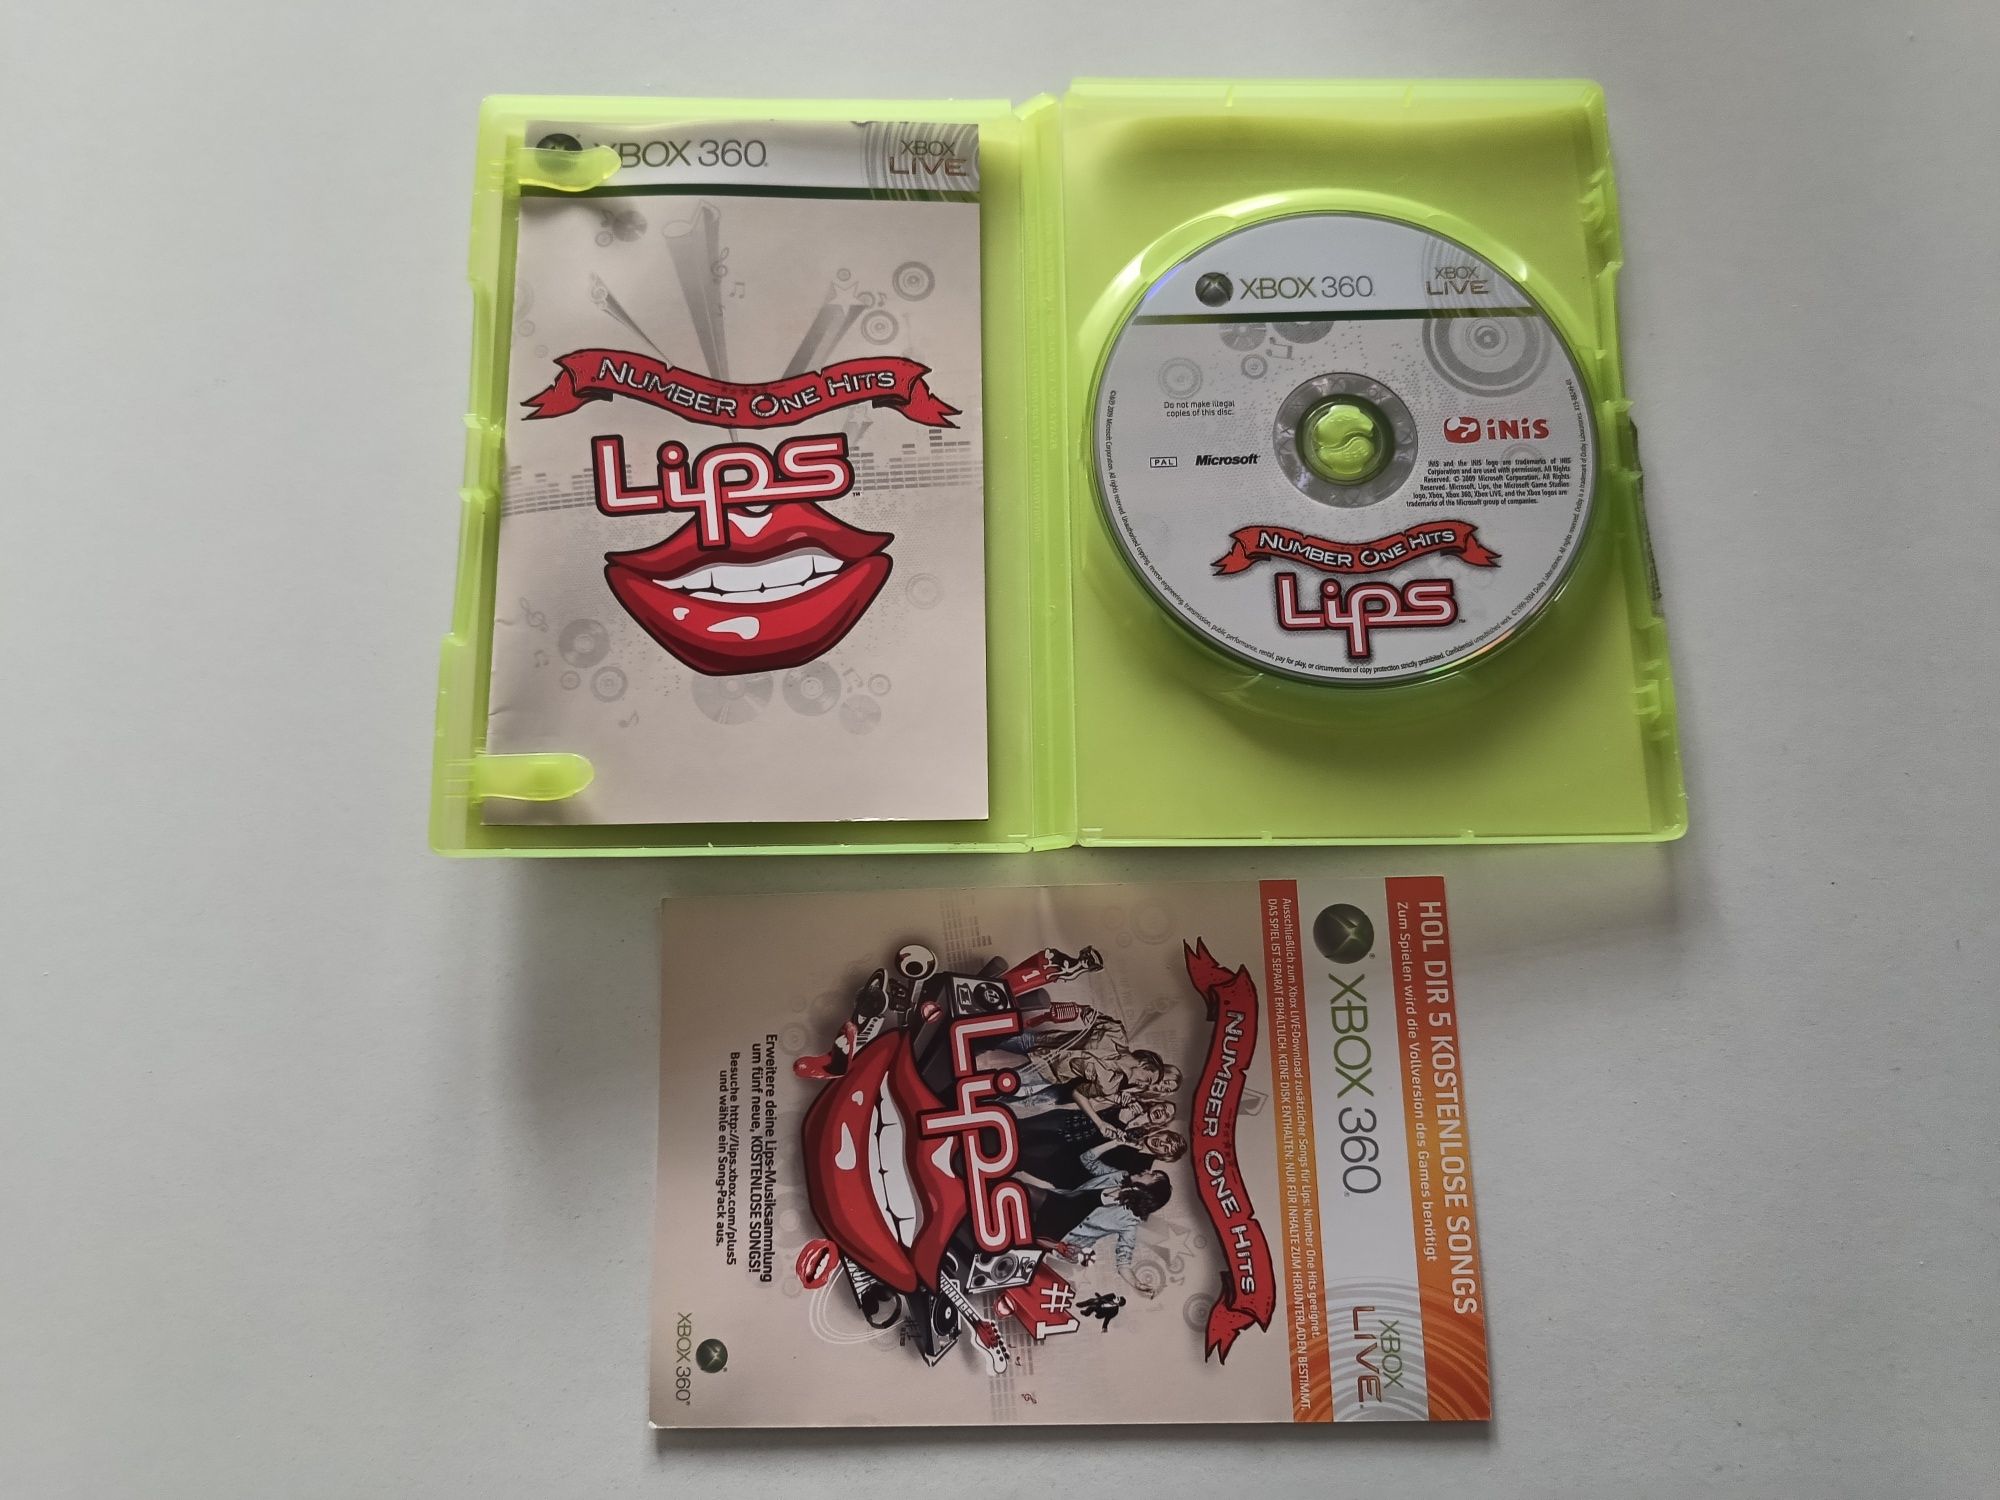 Gra Xbox 360 Lips (Polska wersja) + kod Xbox live